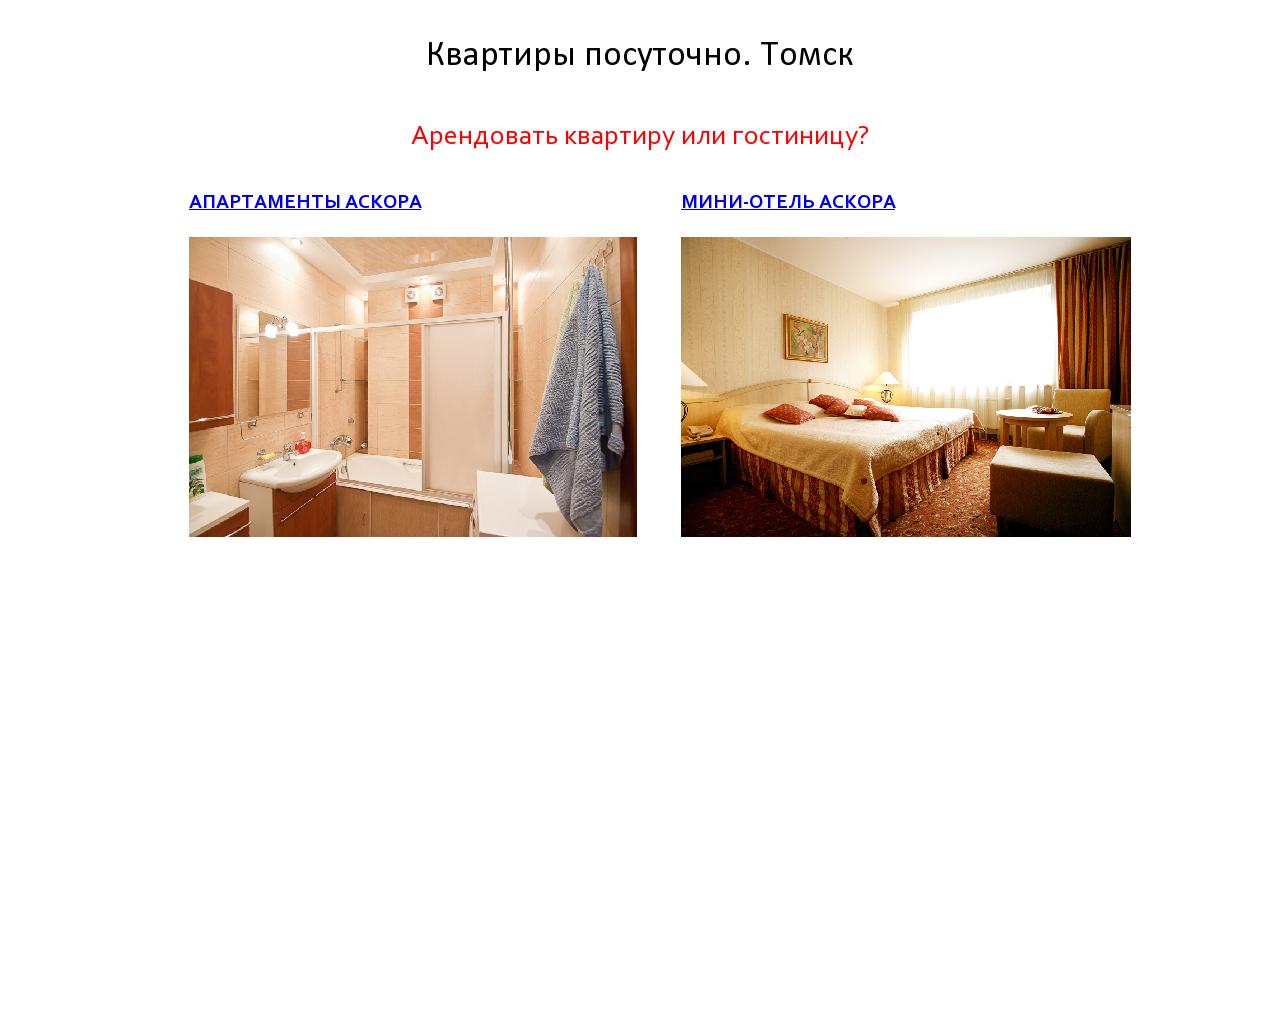 Изображение сайта askora.ru в разрешении 1280x1024